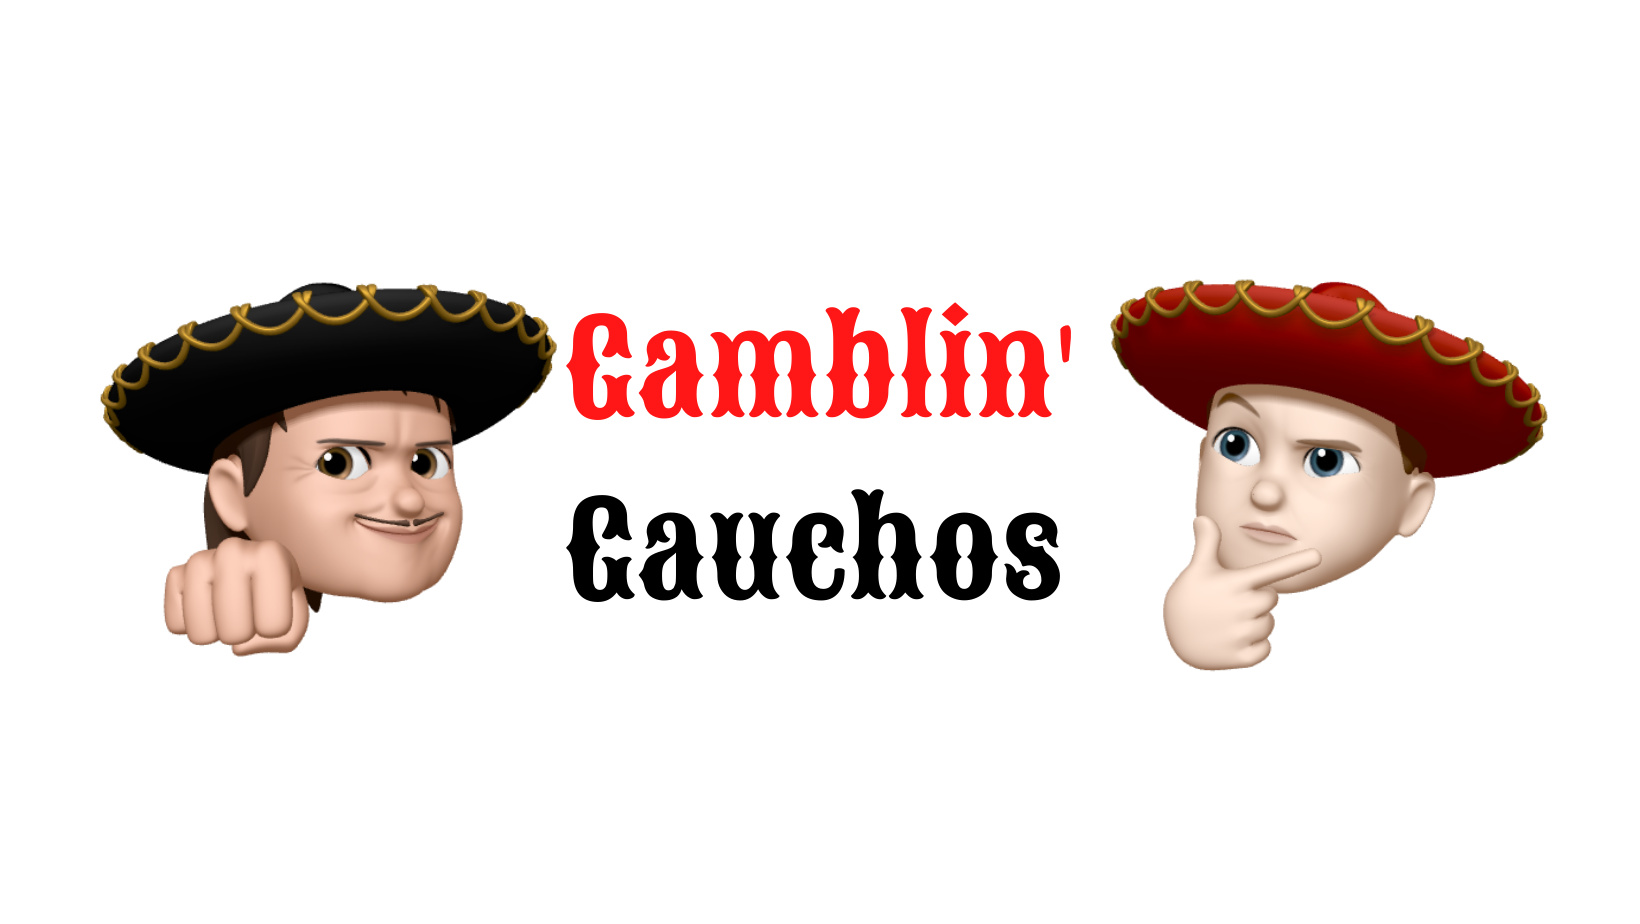 Gamblin’ Gauchos S1 E5: Texas Tech-UH Recap